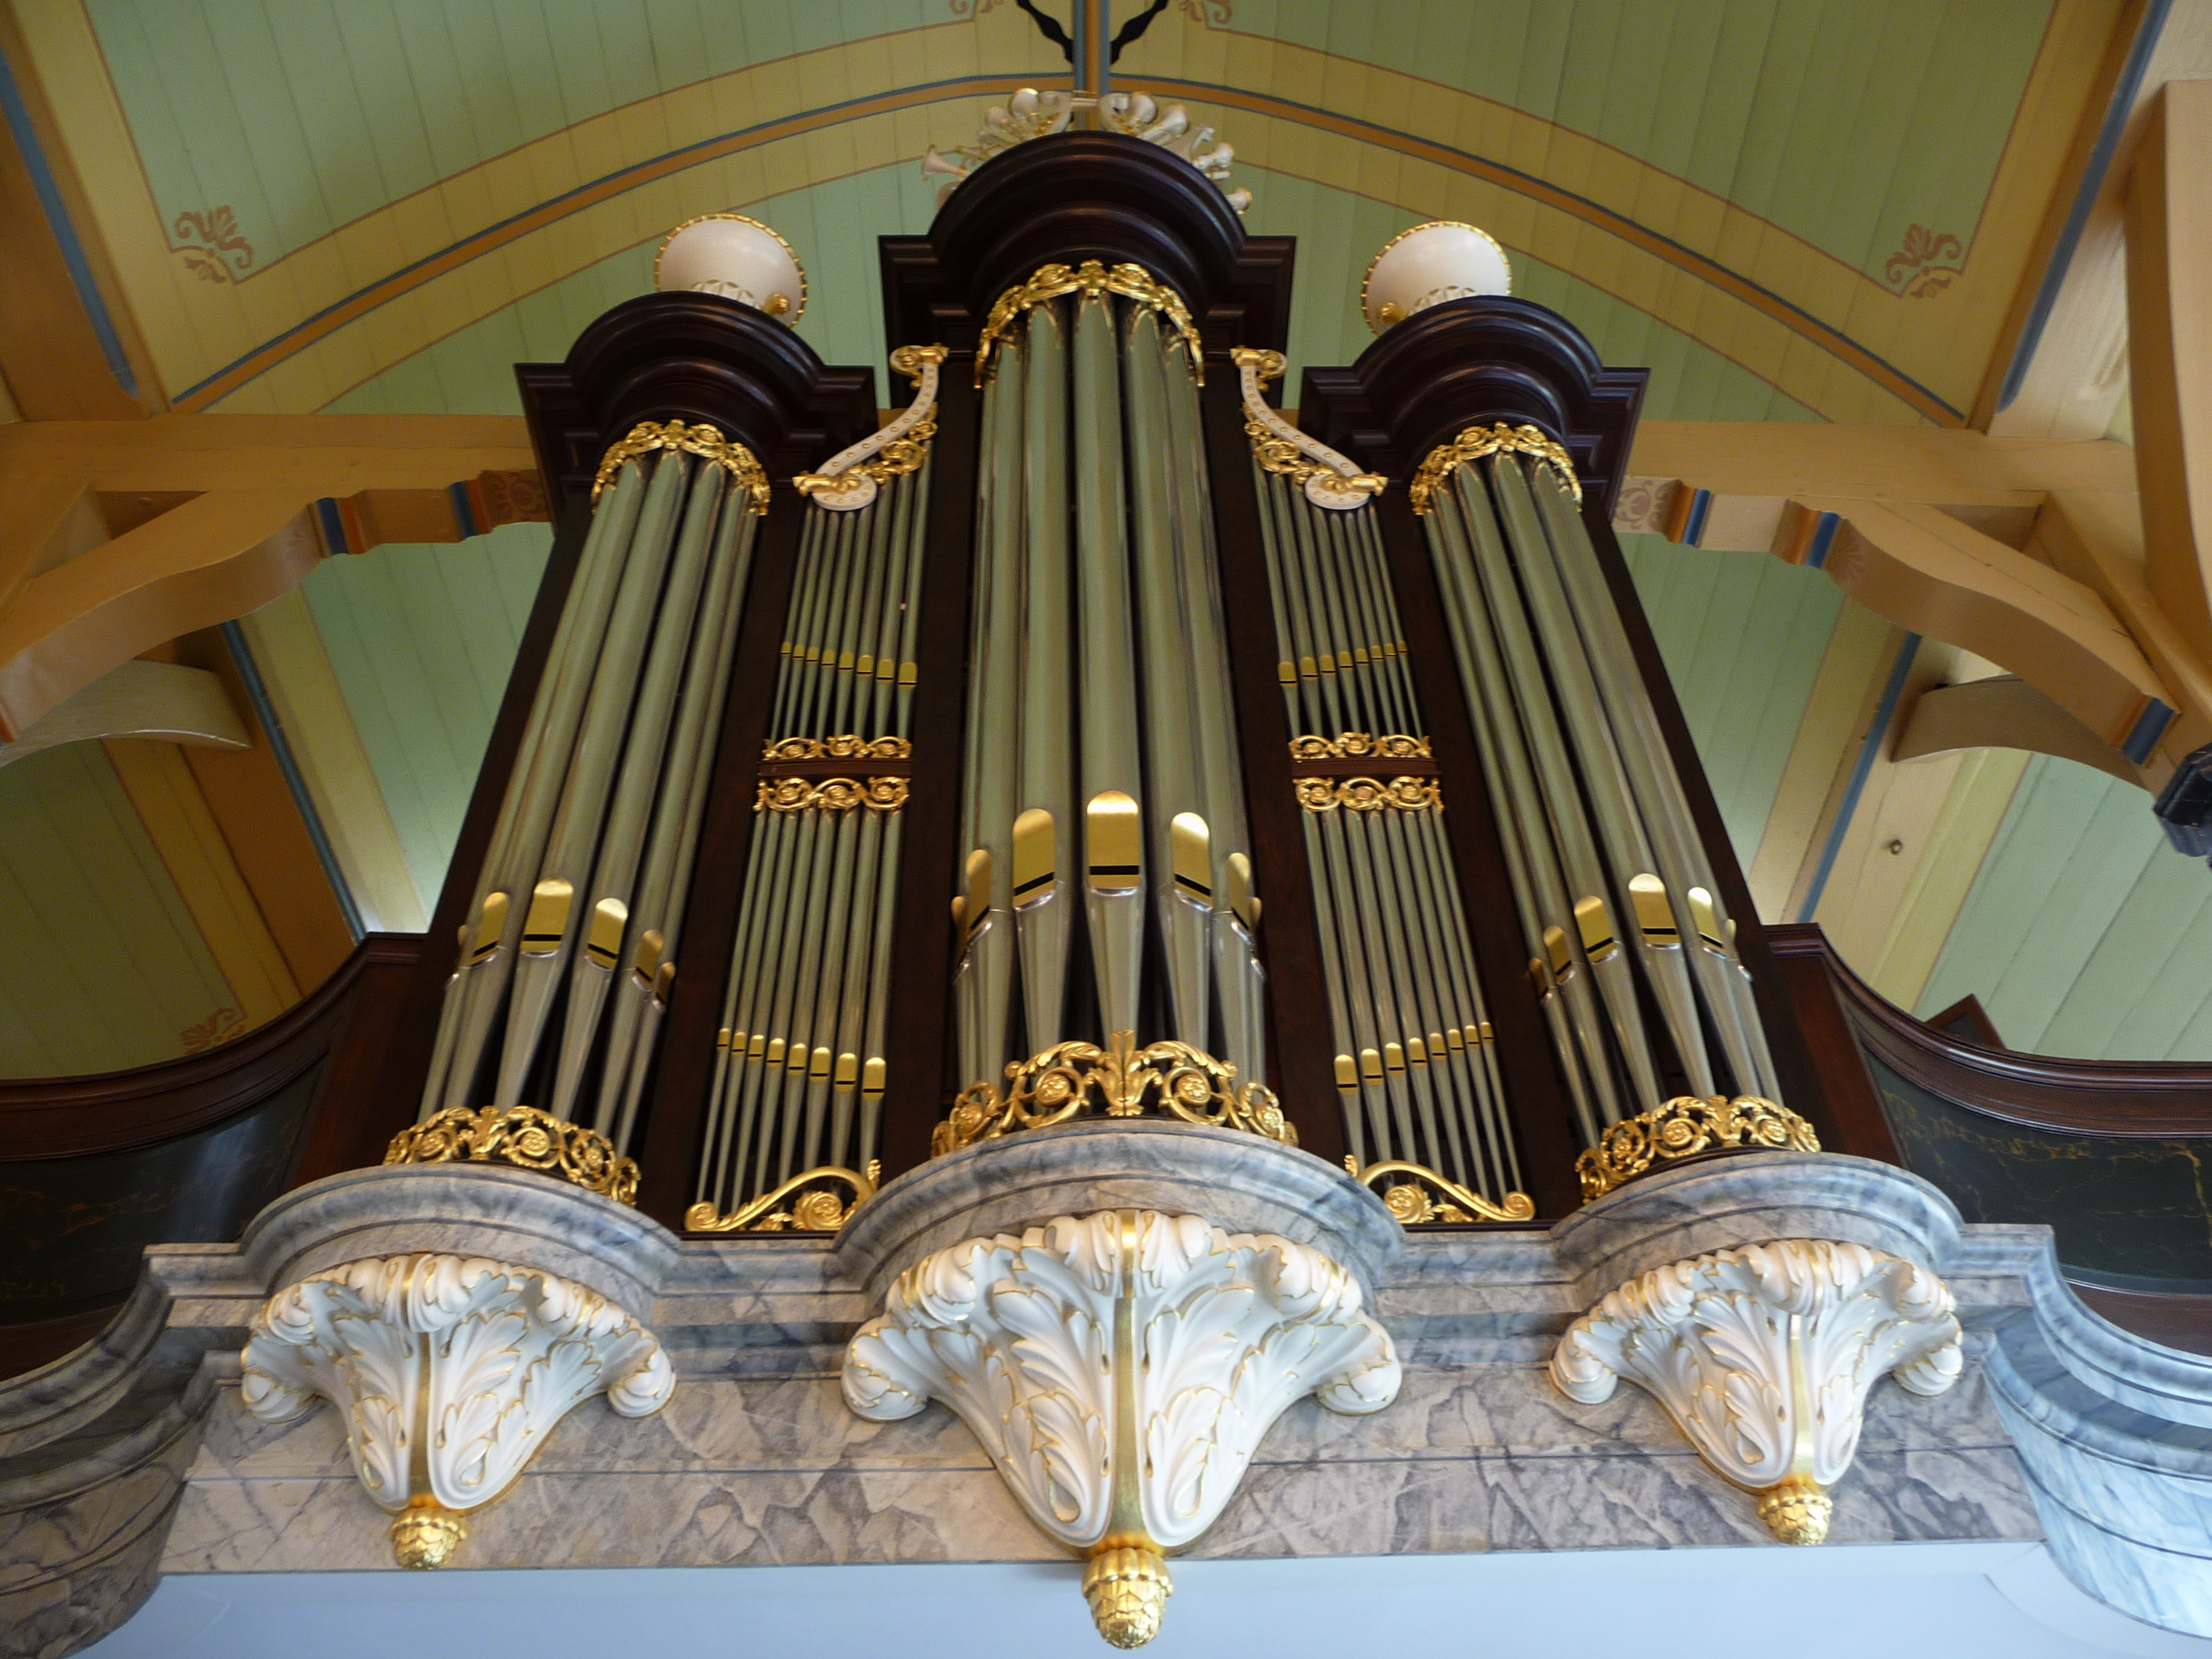 Bätz-orgel